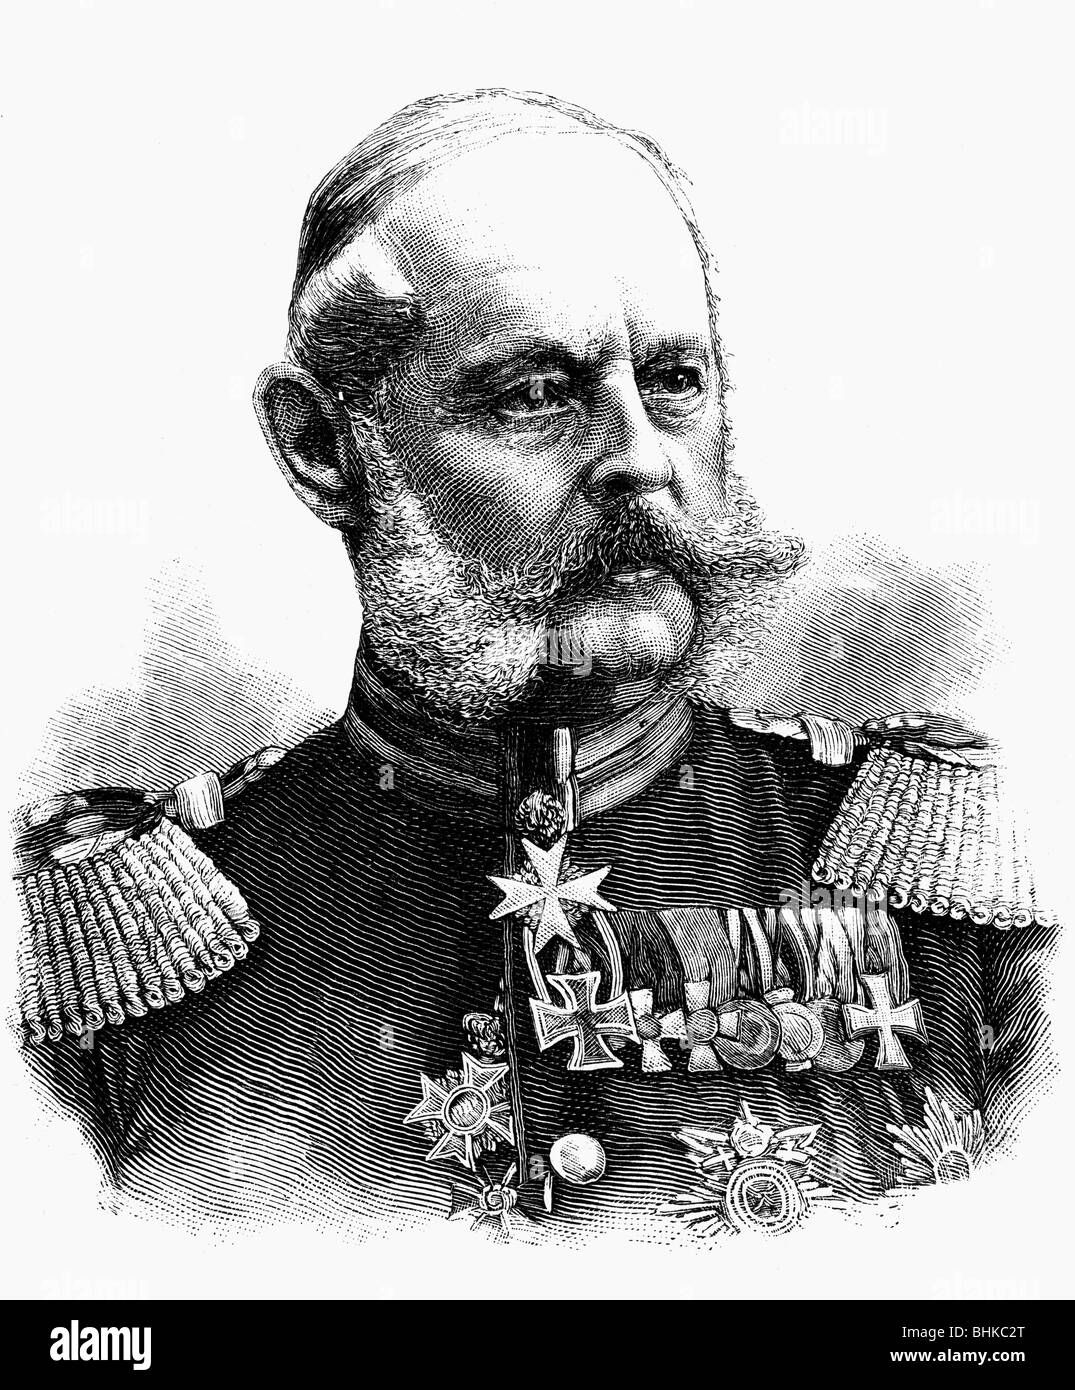 Pape, Alexander August von, 2.2.1813 - 7.5.1895, generale prussiano, comandante generale del corpo della Guardia Prussiana 1884 - 1888, ritratto, incisione in legno, circa 1885, , Foto Stock